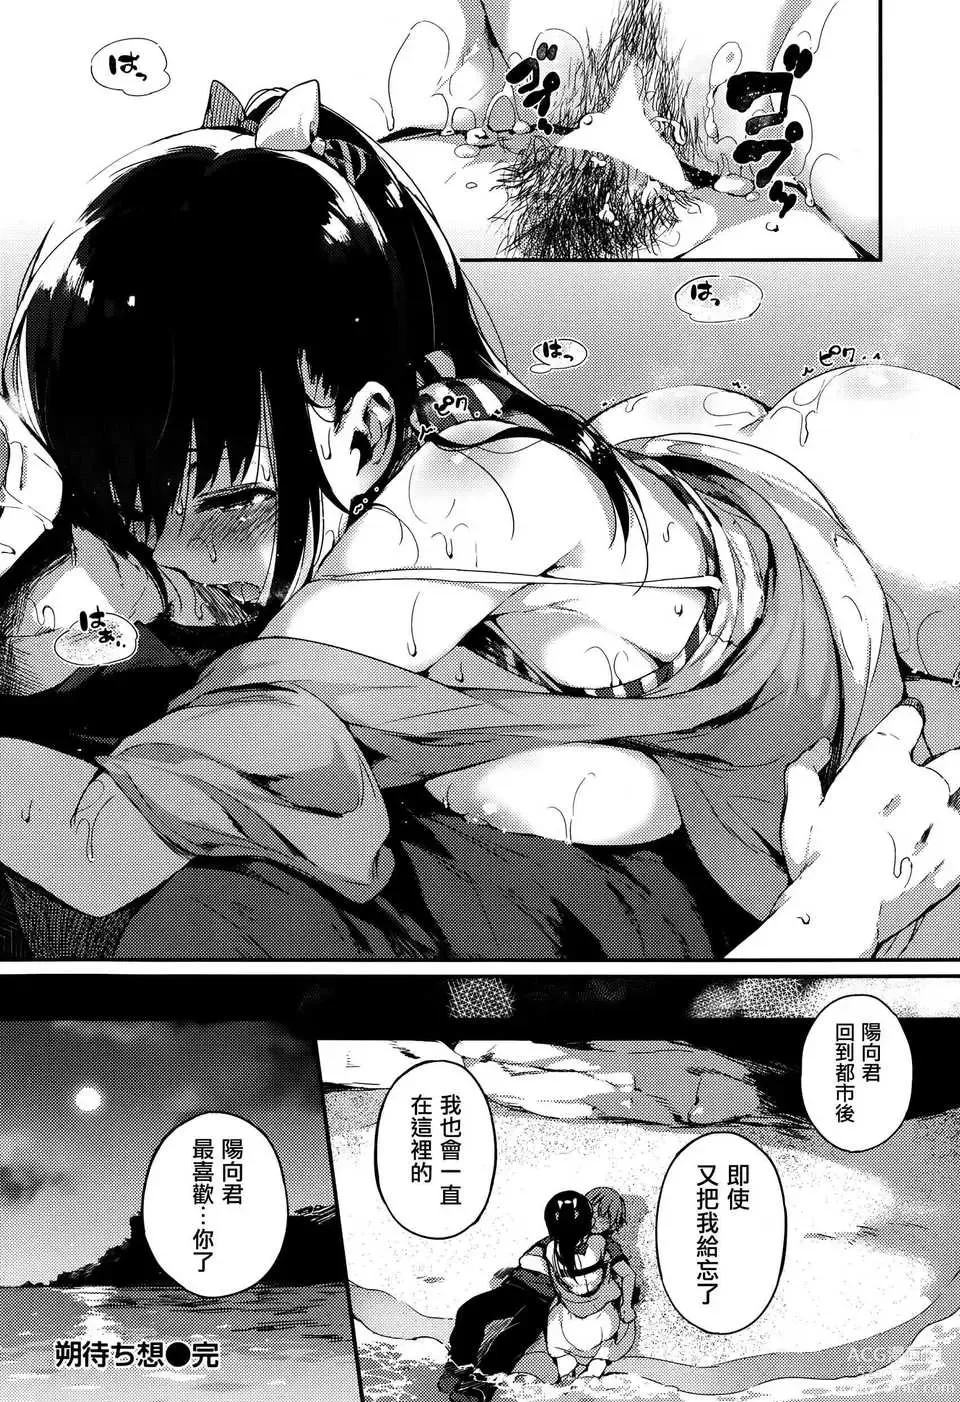 Page 16 of manga Sakumachisou